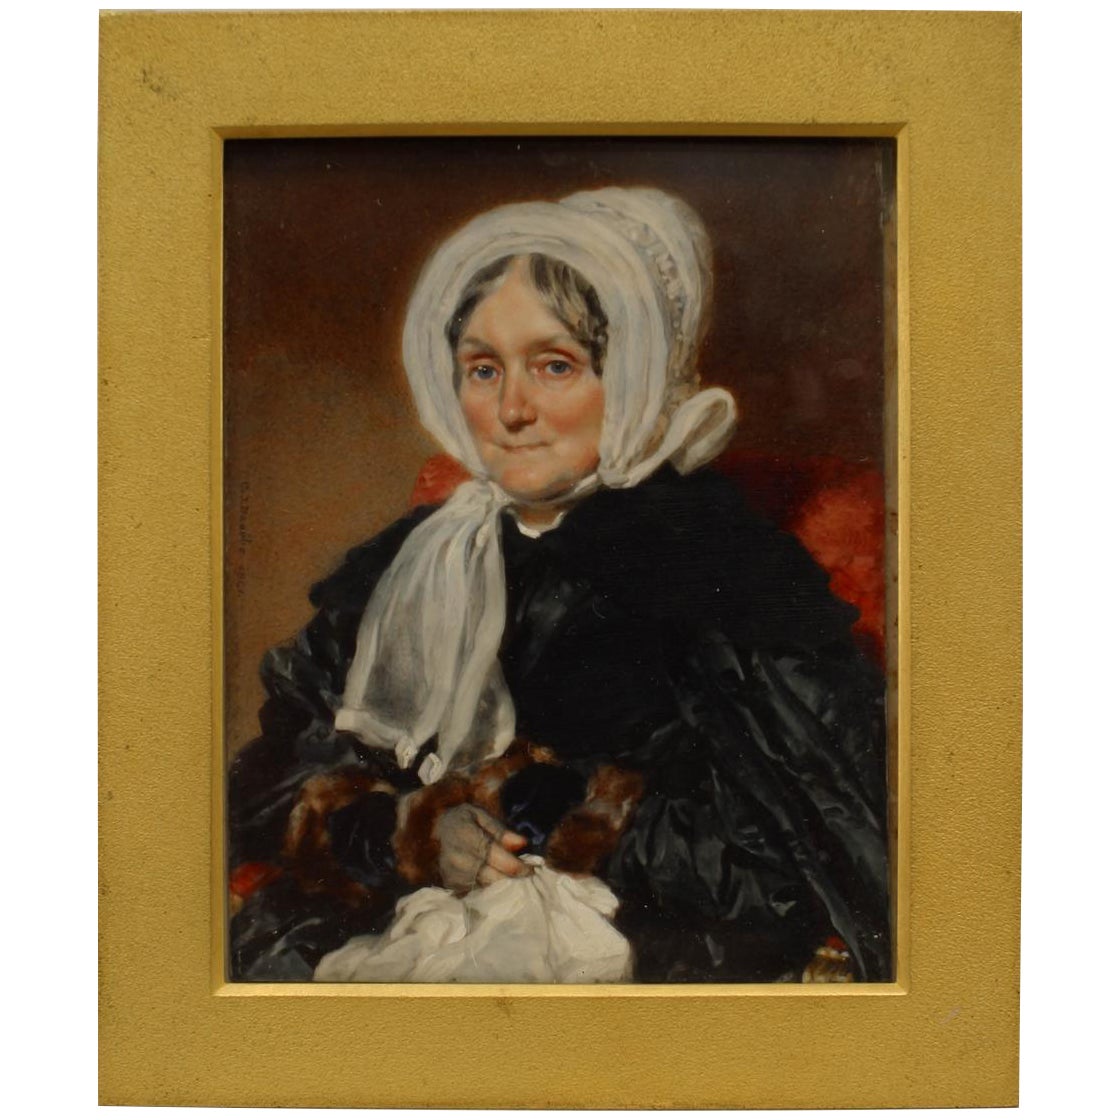 Miniatur-Porträt einer englischen viktorianischen Dame aus dem 19. Jahrhundert